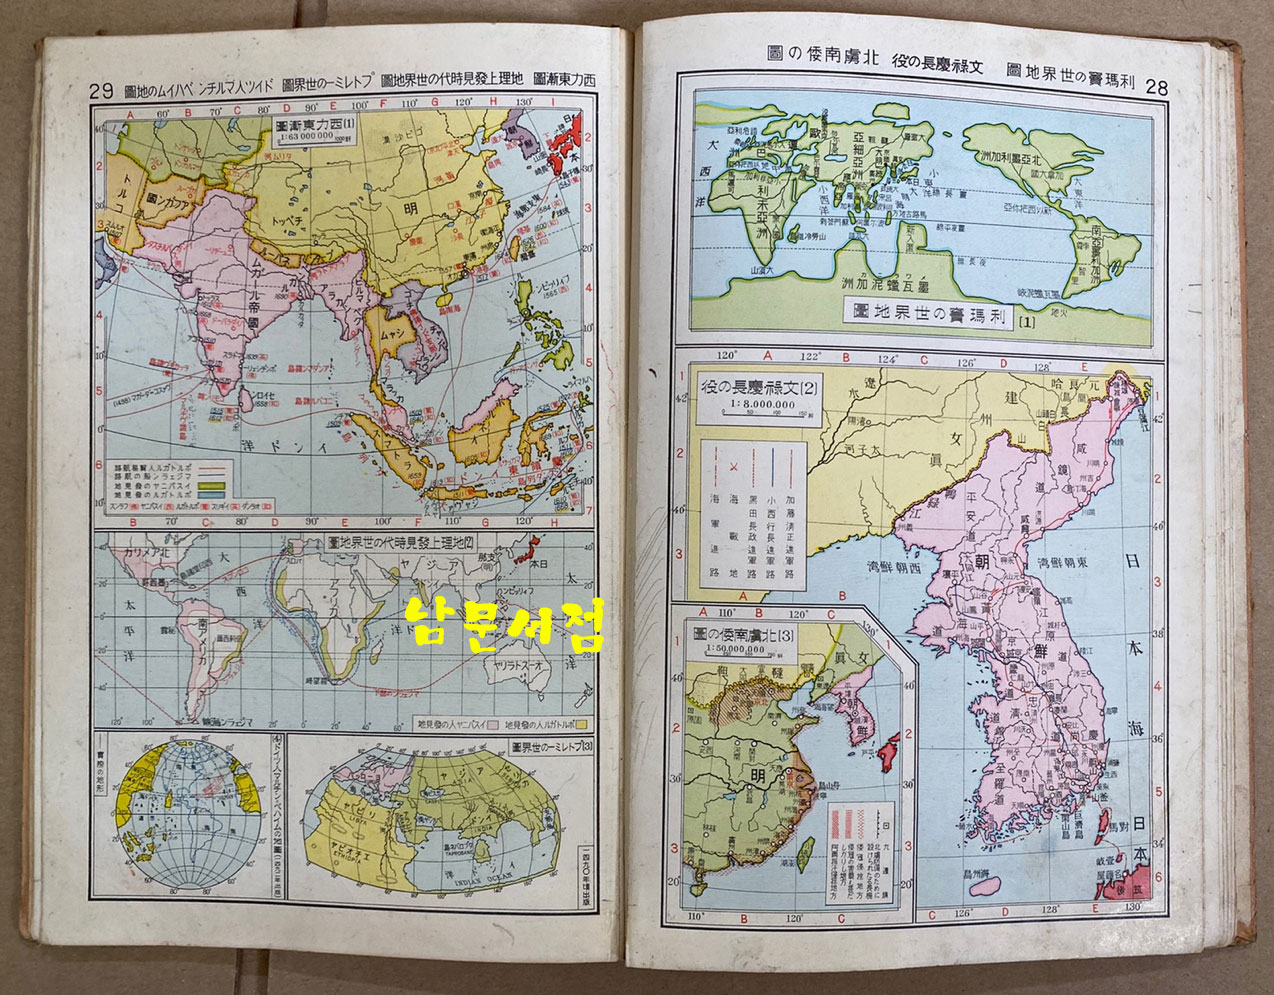 신선 역사정도 동양사지부 신제판 도판 35쪽 색인 32쪽 일본 제국서원발행 1938년 정정발행